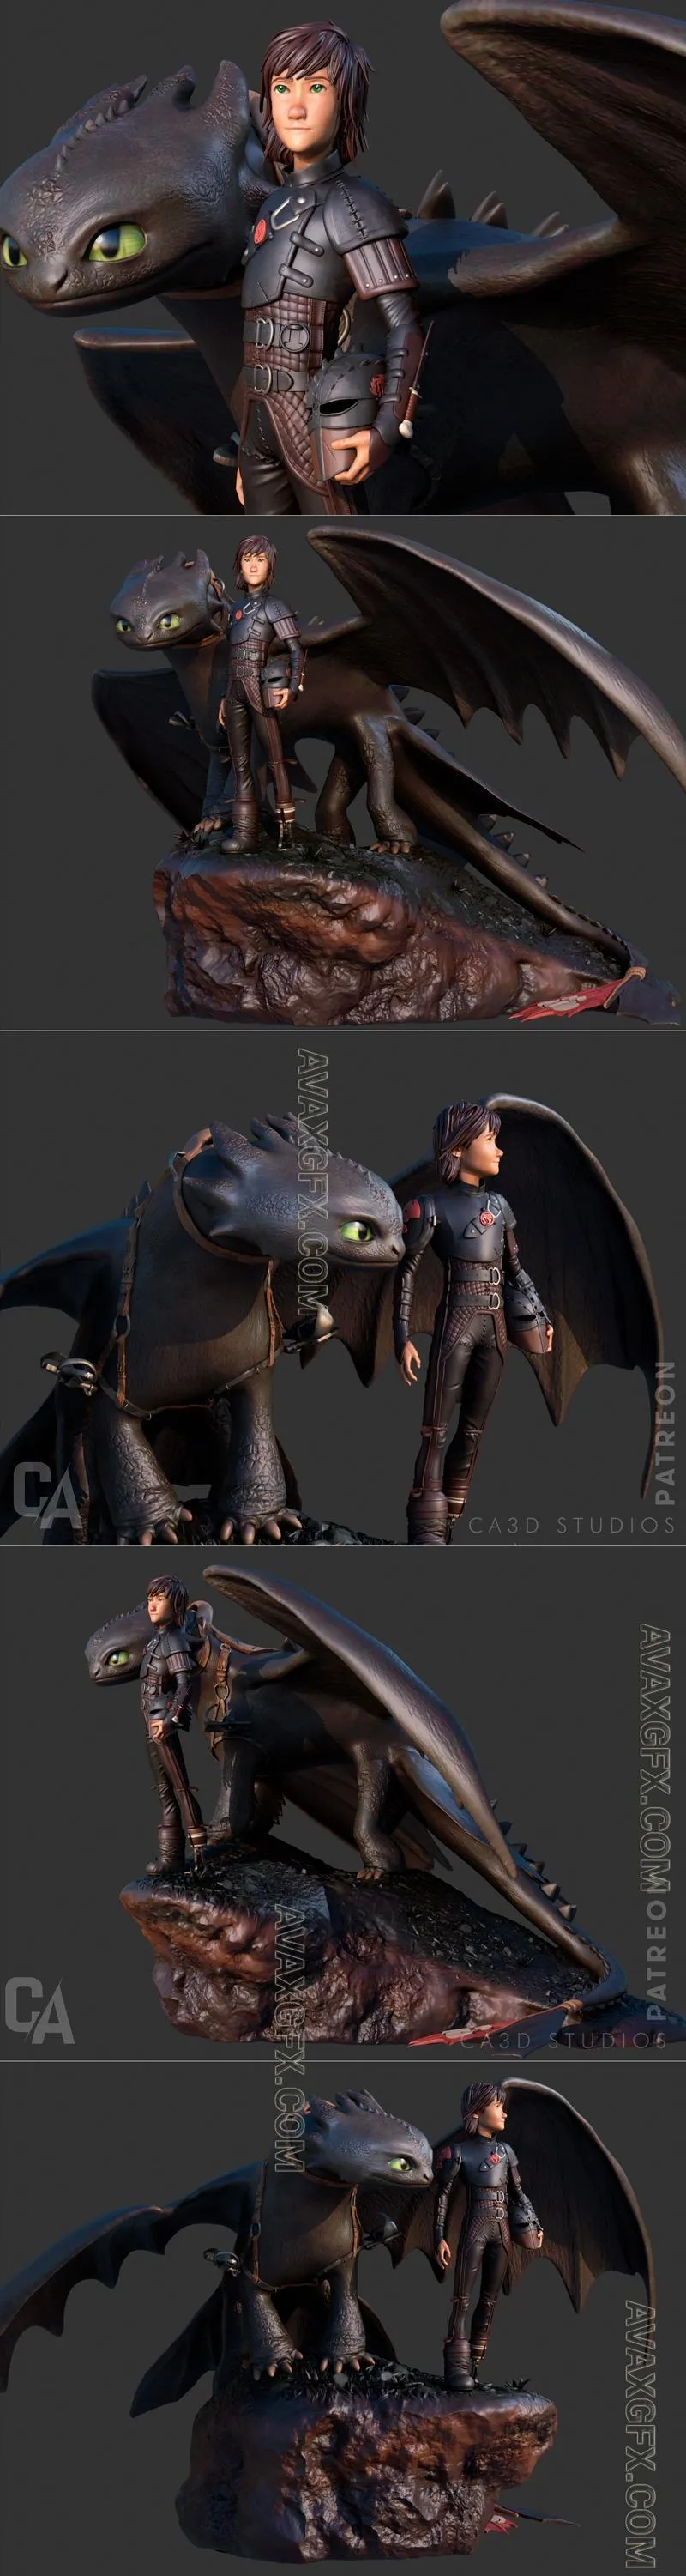 Ca 3d Studios - Toothless Hiccup - STL 3D Model